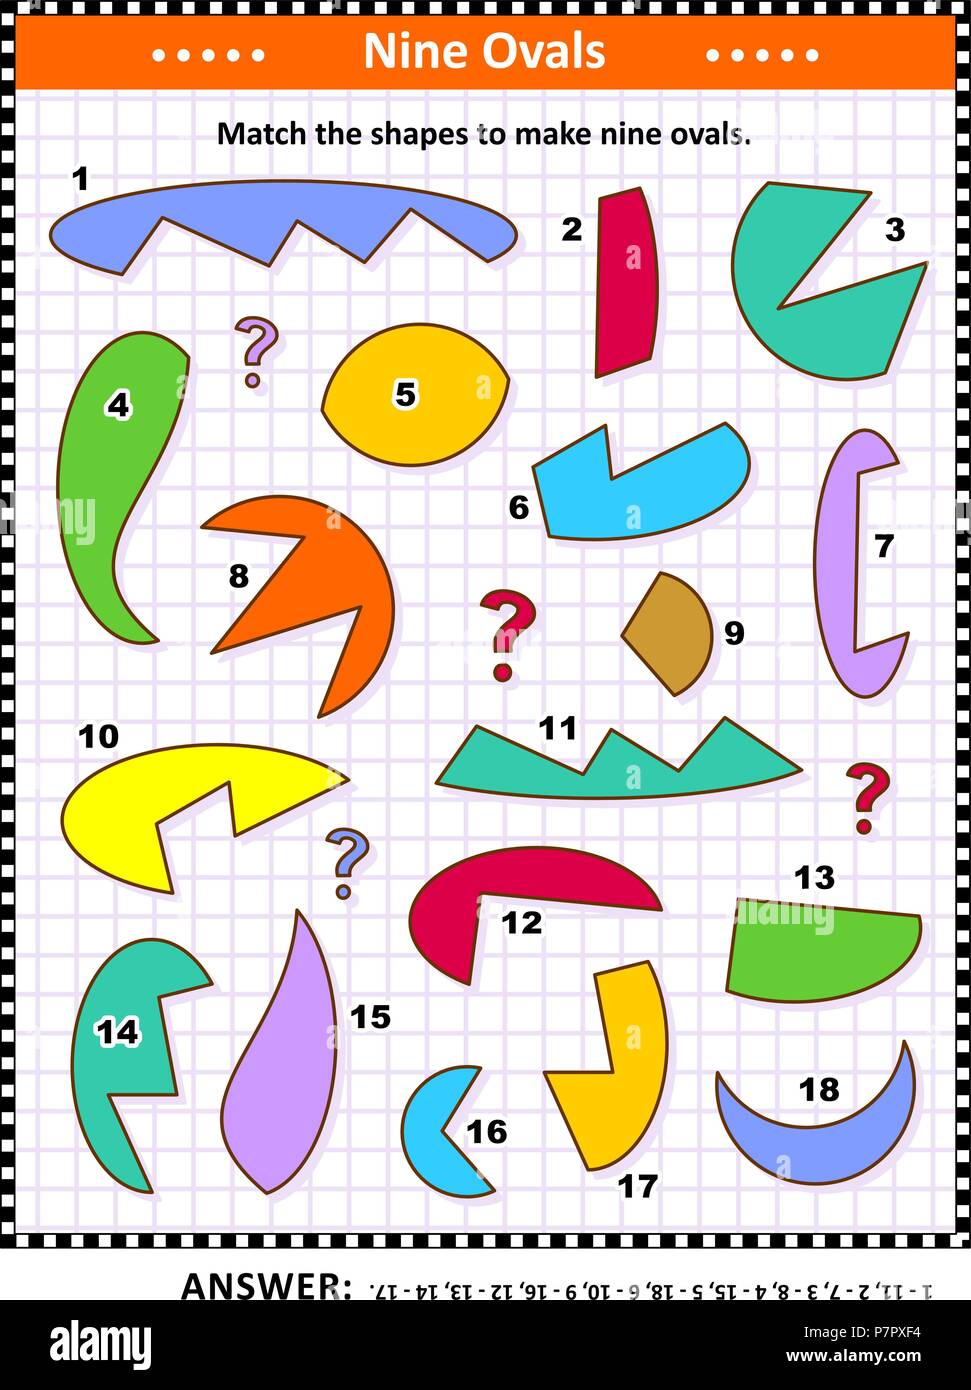 IQ und räumlichen Fähigkeiten Ausbildung Mathematik visuelle Puzzle: Entsprechen den Formen 9 ovale oder Ellipsen zu machen. Antwort enthalten. Stock Vektor